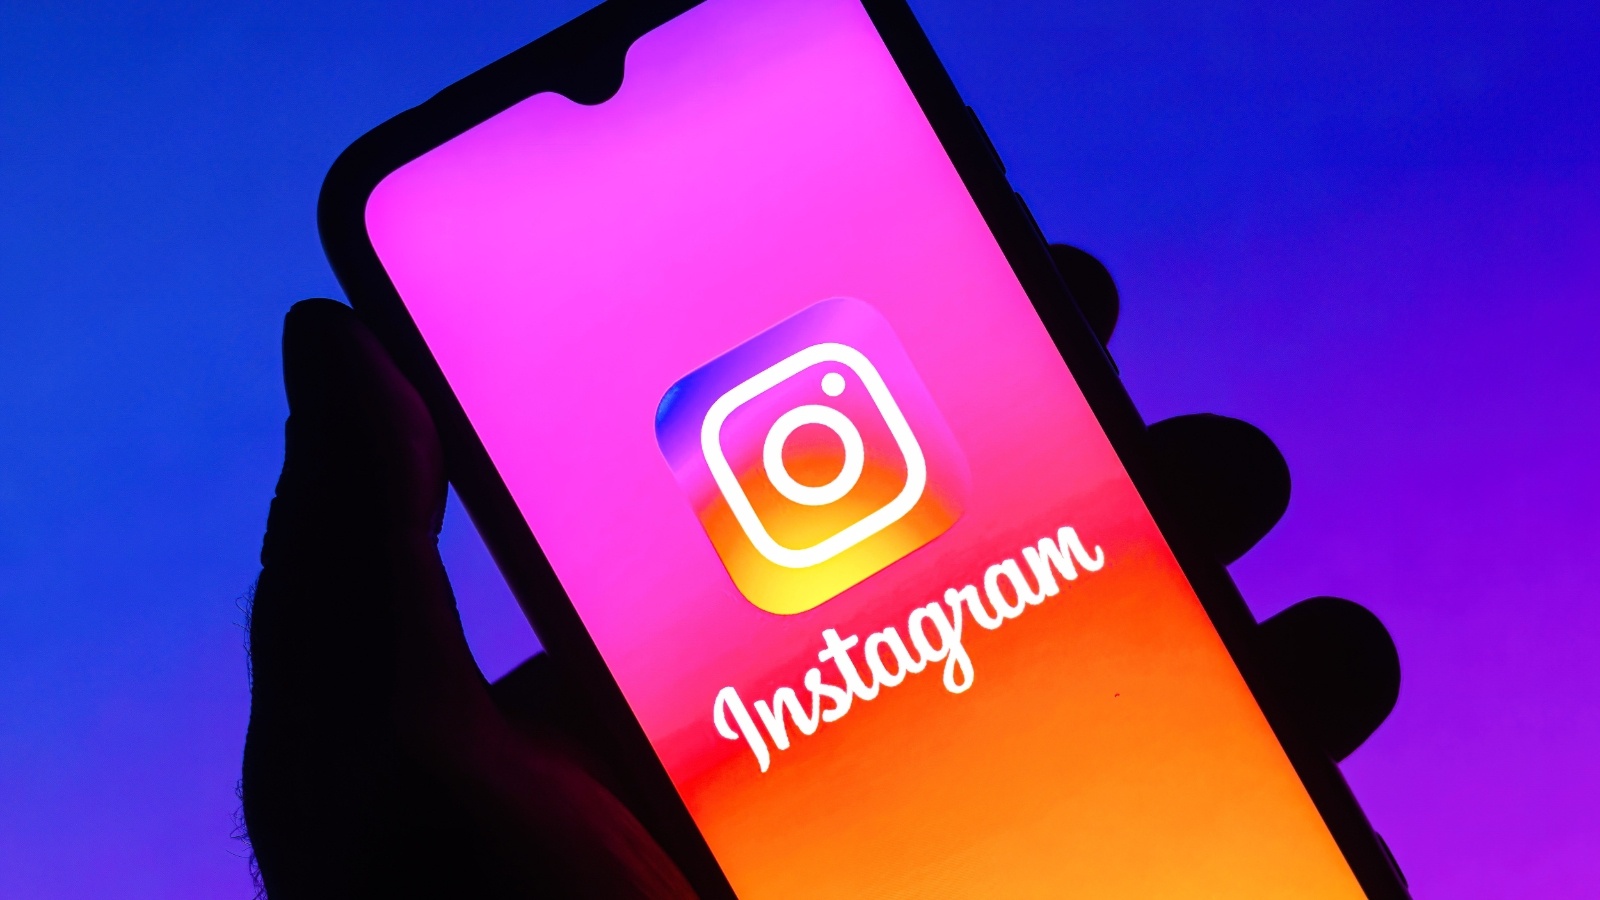 Konačno, korisnici Instagrama mogu da odgovaraju na objave korištenjem GIF-ova. Adam Mosseri je objavio da je funkcija najnoviji dodatak